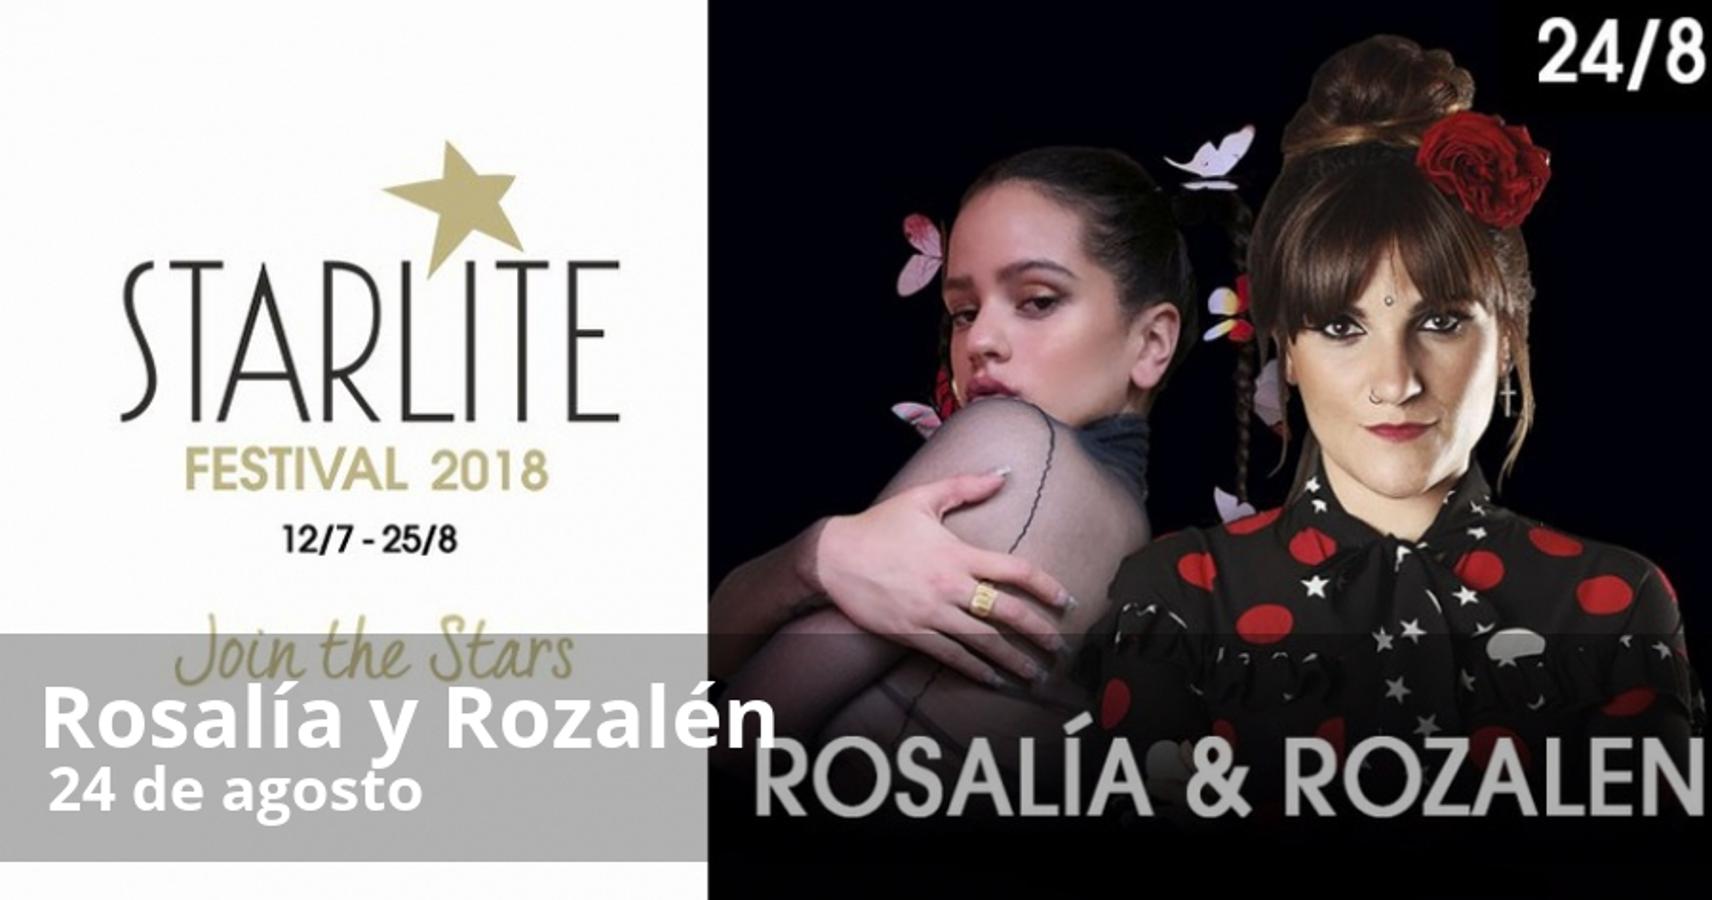 La música latina será la gran protagonista en la edición del Starlite 2018, pero el festival de Marbella ofrece este año un amplio programa de actuaciones para todos los gustos con artistas de renombre internacional. 